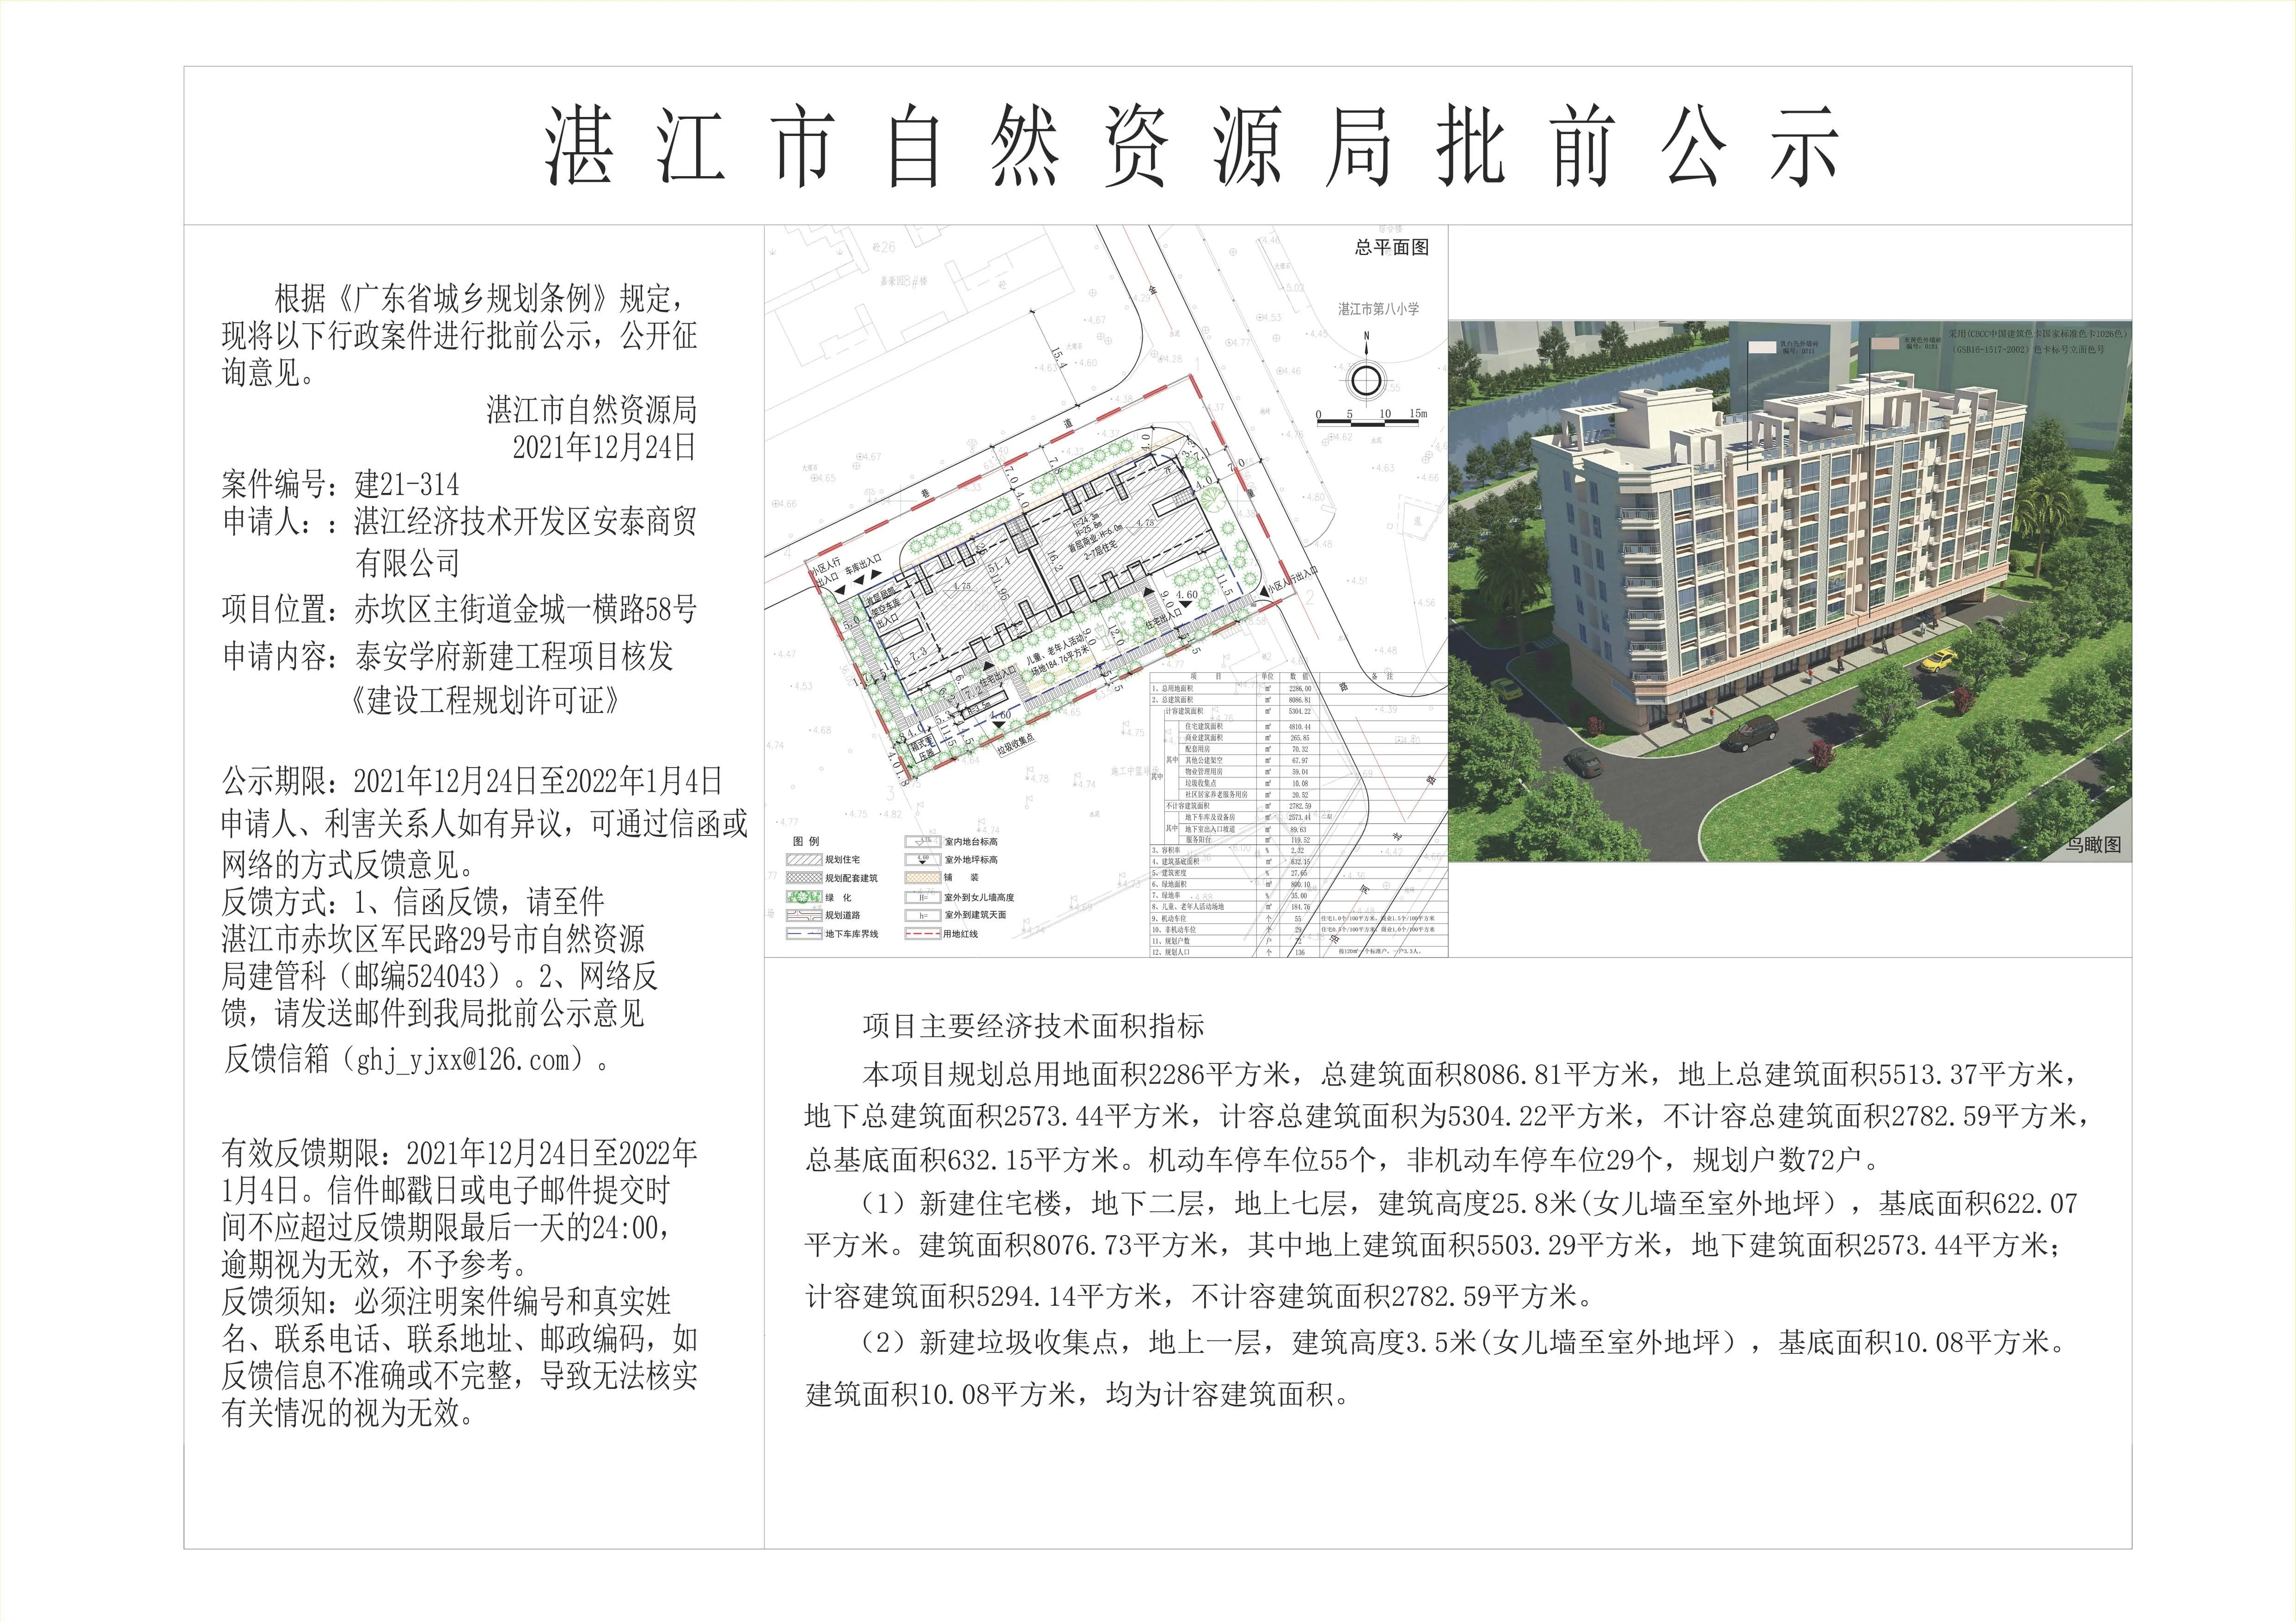 赤坎区新项目-泰安学府规划批前公示出炉 拟建一栋7层住宅